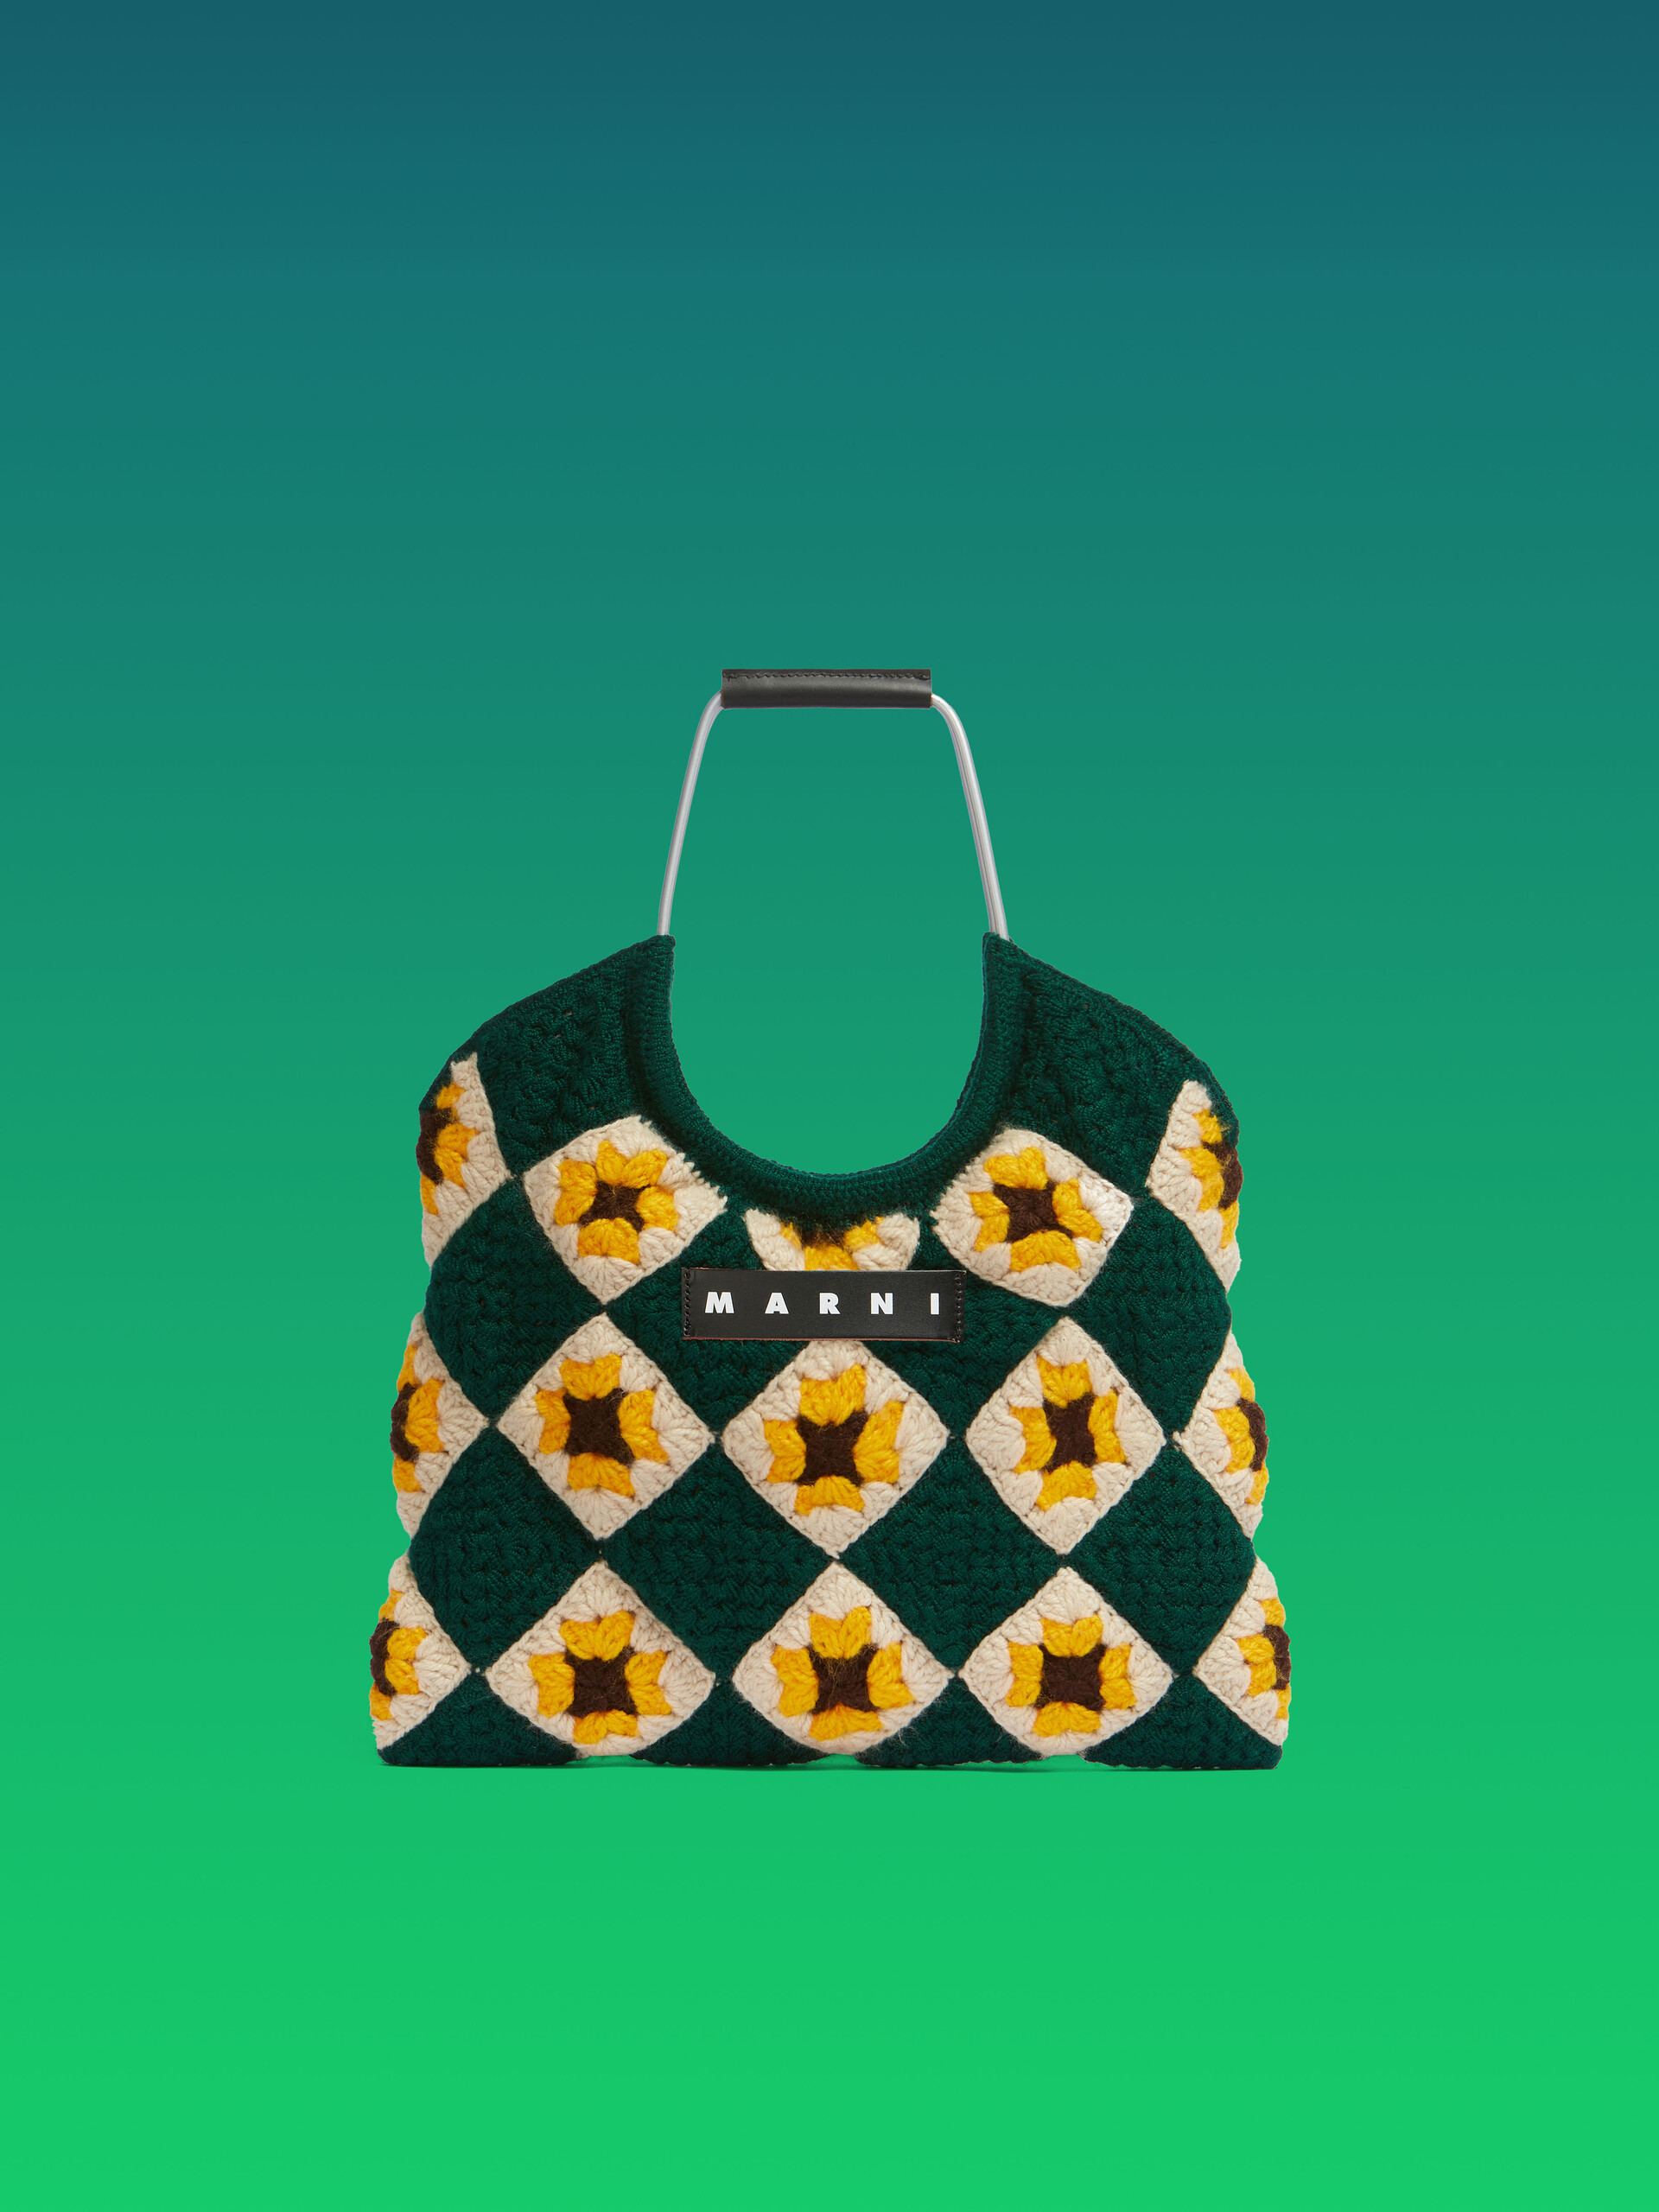 Blue Crochet Marni Market Hedge Bag - Shopping Bags - Image 1